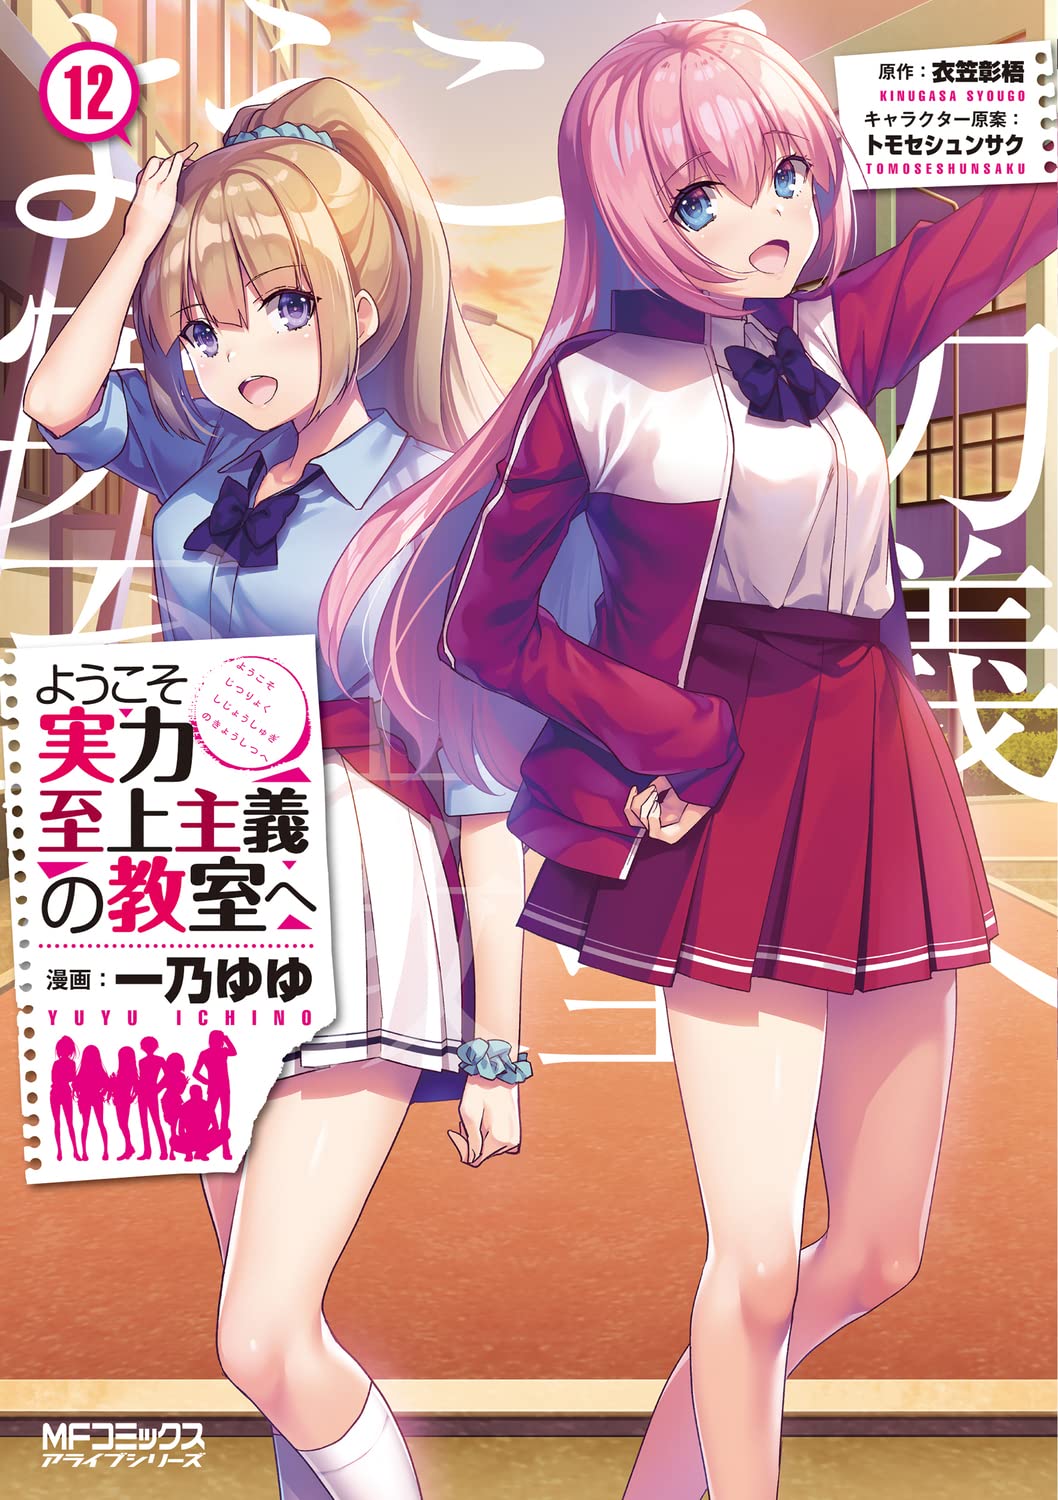 Youkoso Jitsuryoku Shijou Shugi no Kyoushitsu e Vol.7 Light Novel Japan